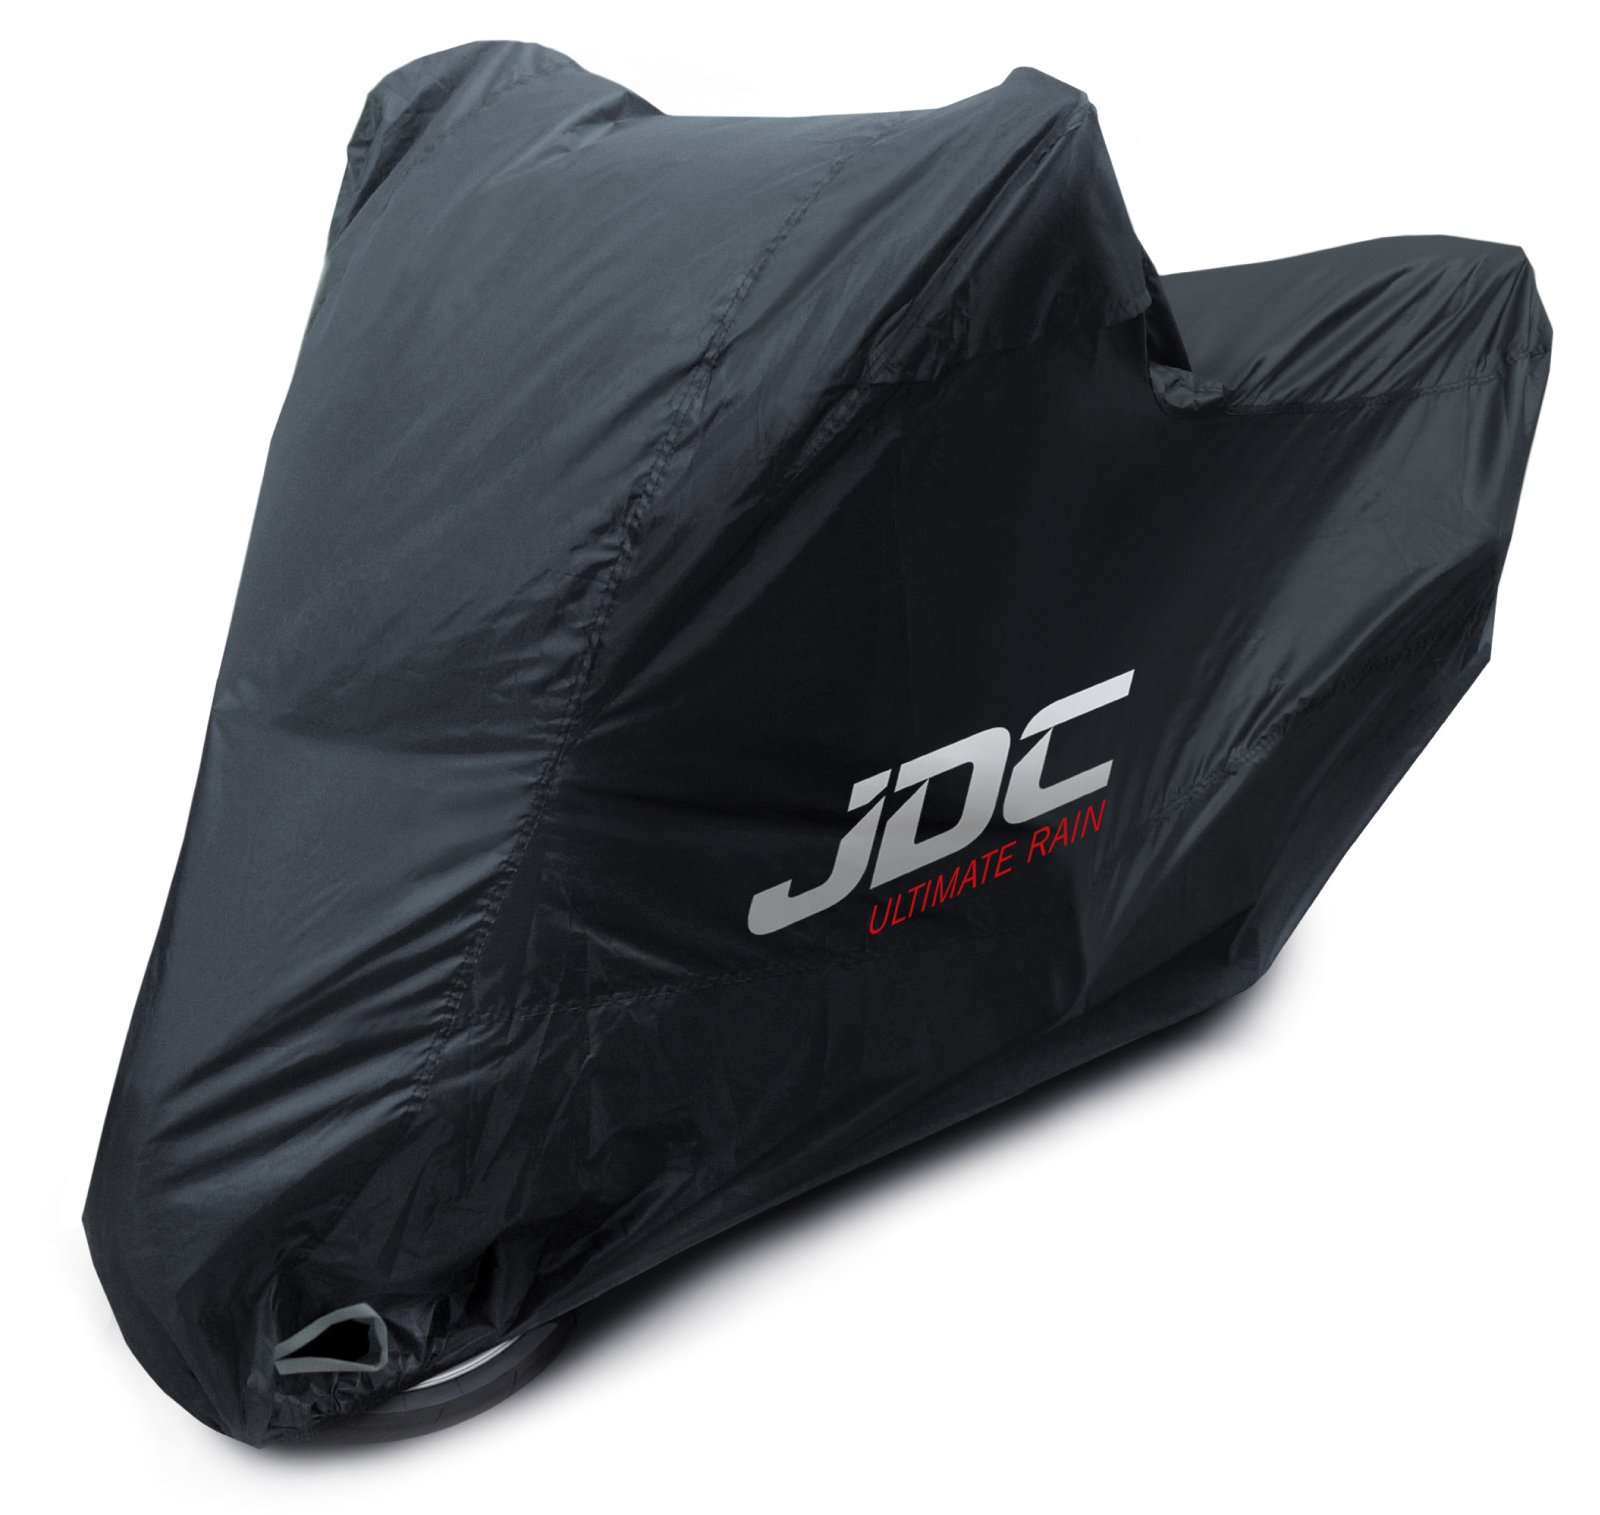 JDC 100% wasserdichte Motorradabdeckung – Ultimate RAIN (Strapazierfähig, weiches Futter, hitzebeständig, verschweißte Nähte) - M von JDC